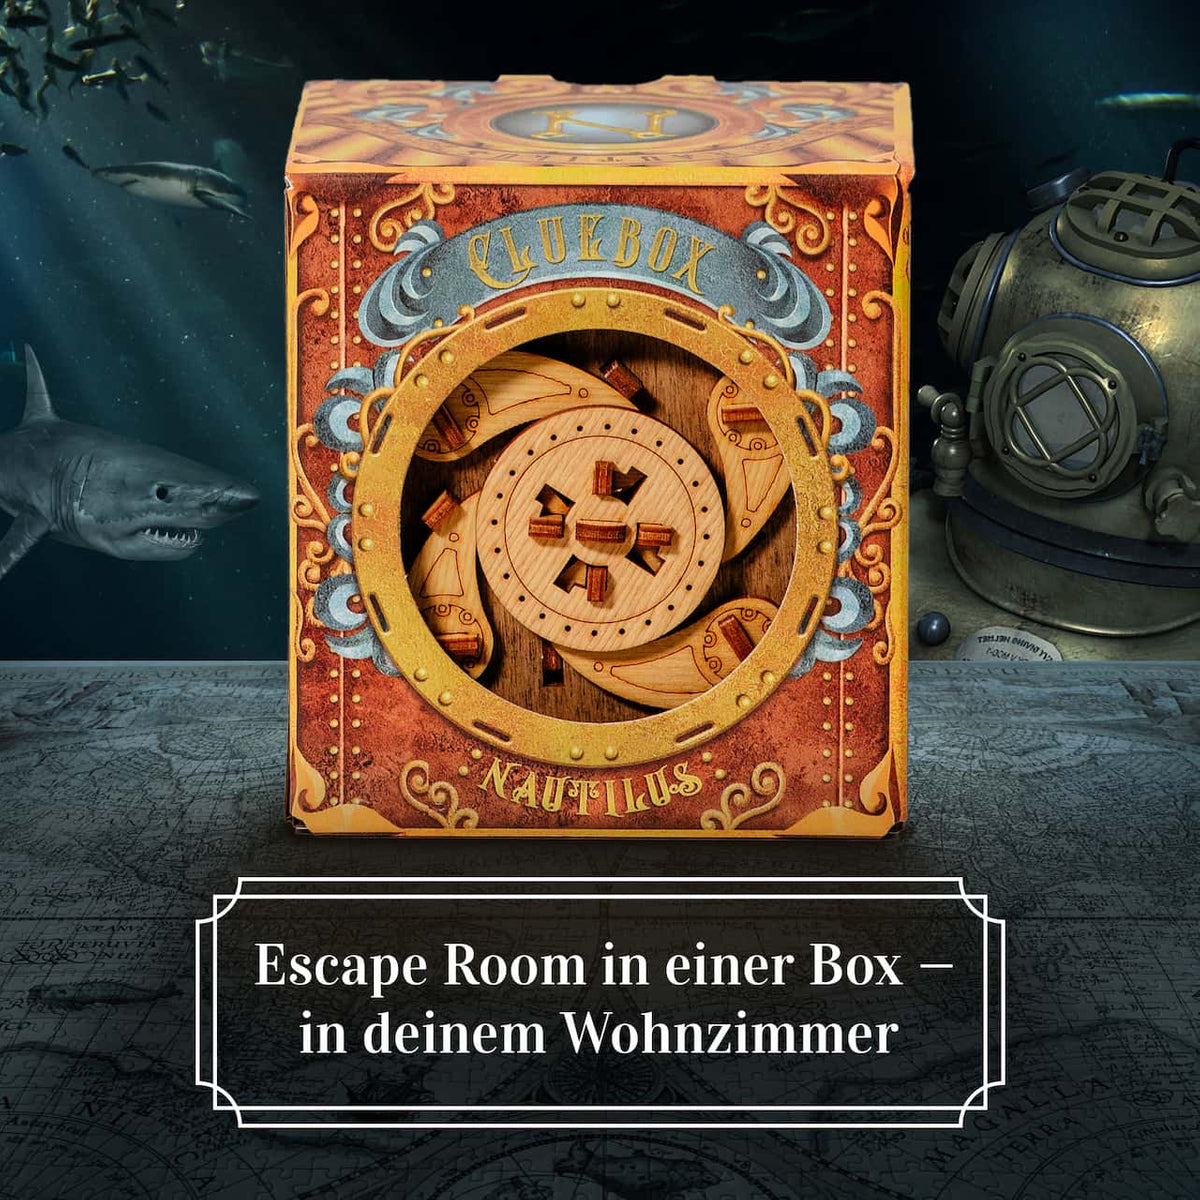 Cluebox - Escape Room in einer Box. Captain Nemos Nautilus